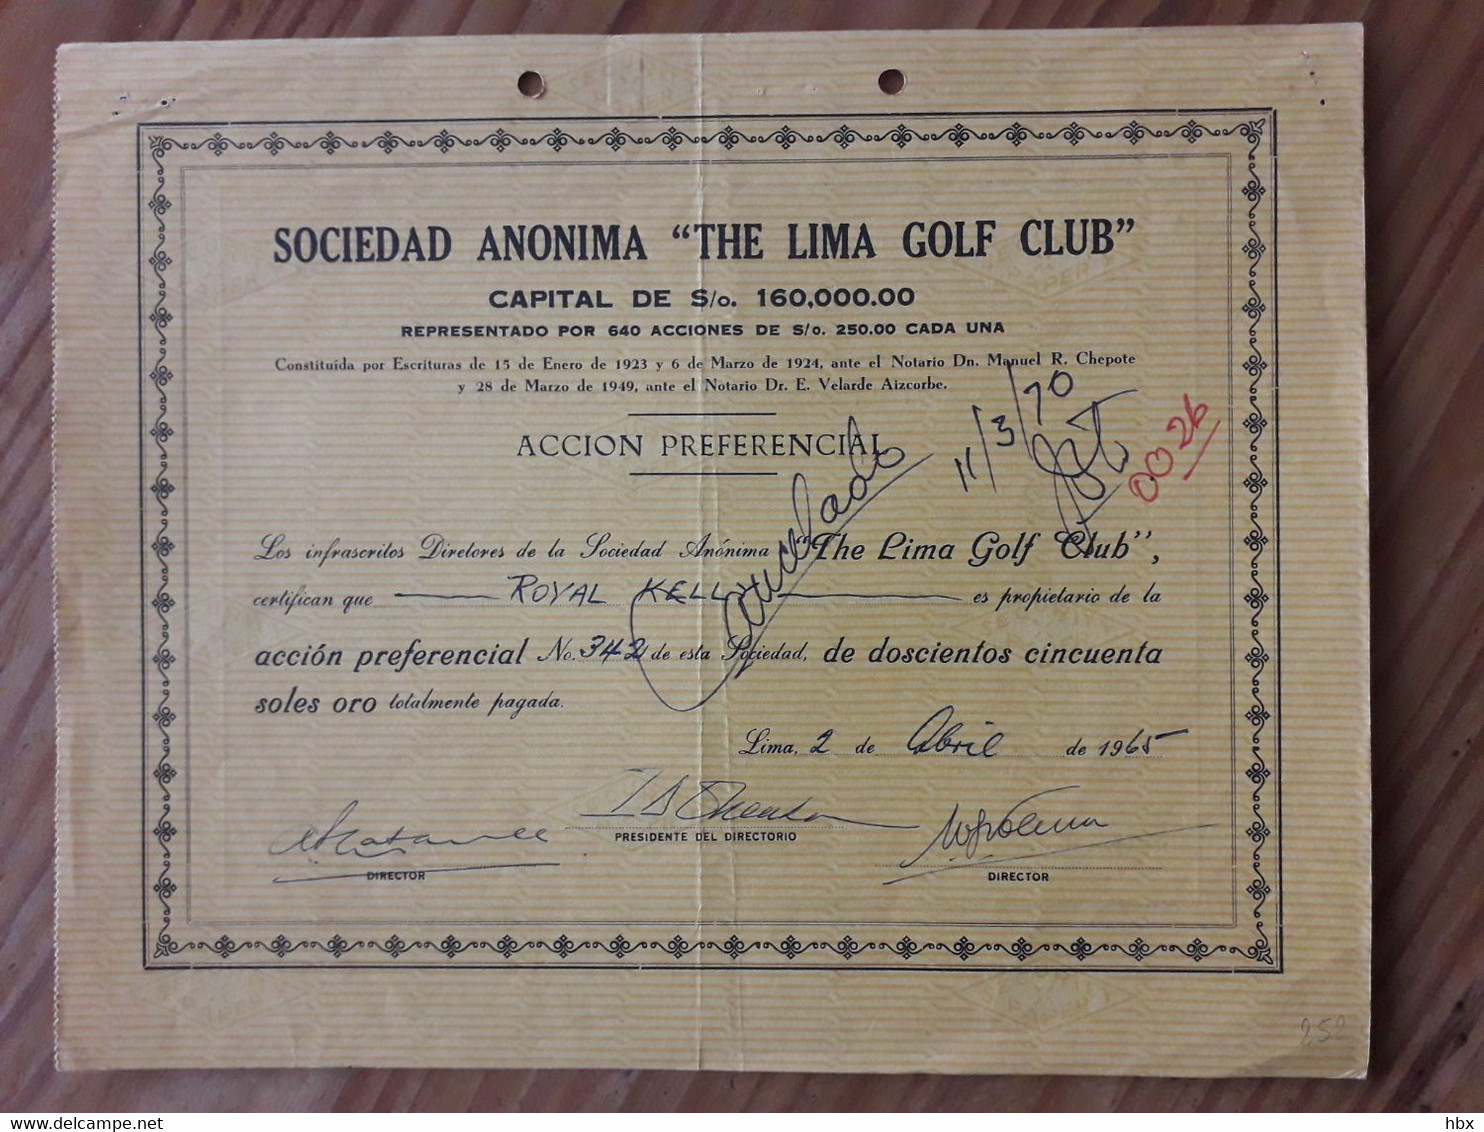 The Lima Golf Club - 1965 - Sports